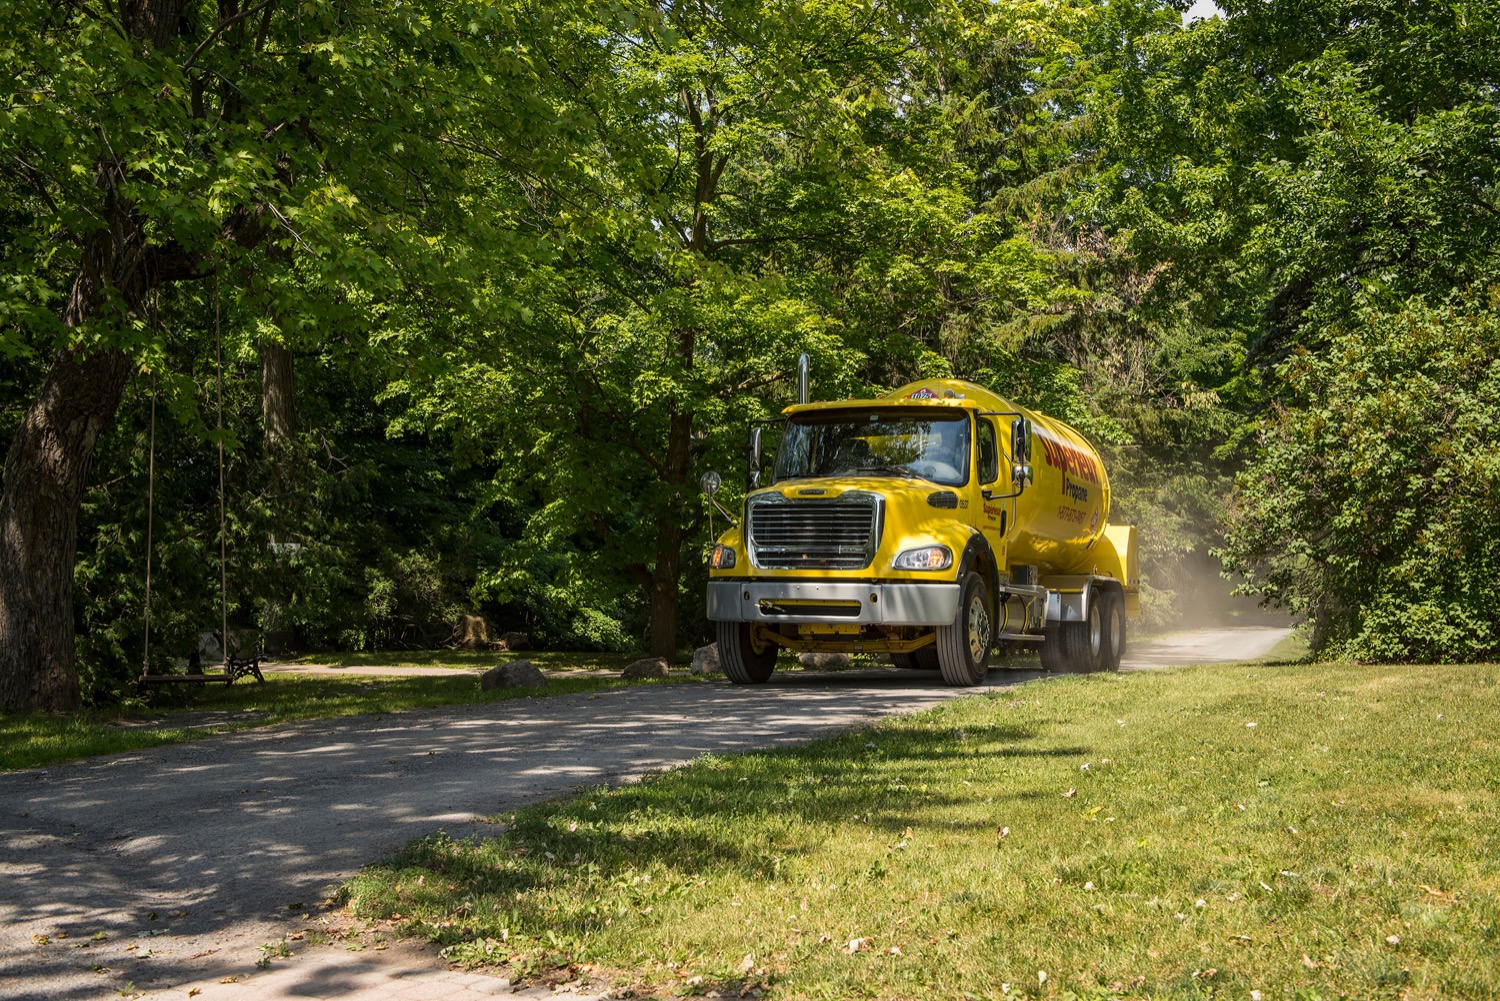 Camion Supérieur Propane effectuant une livraison à une maison sur un chemin de terre rural bordé d'arbres.